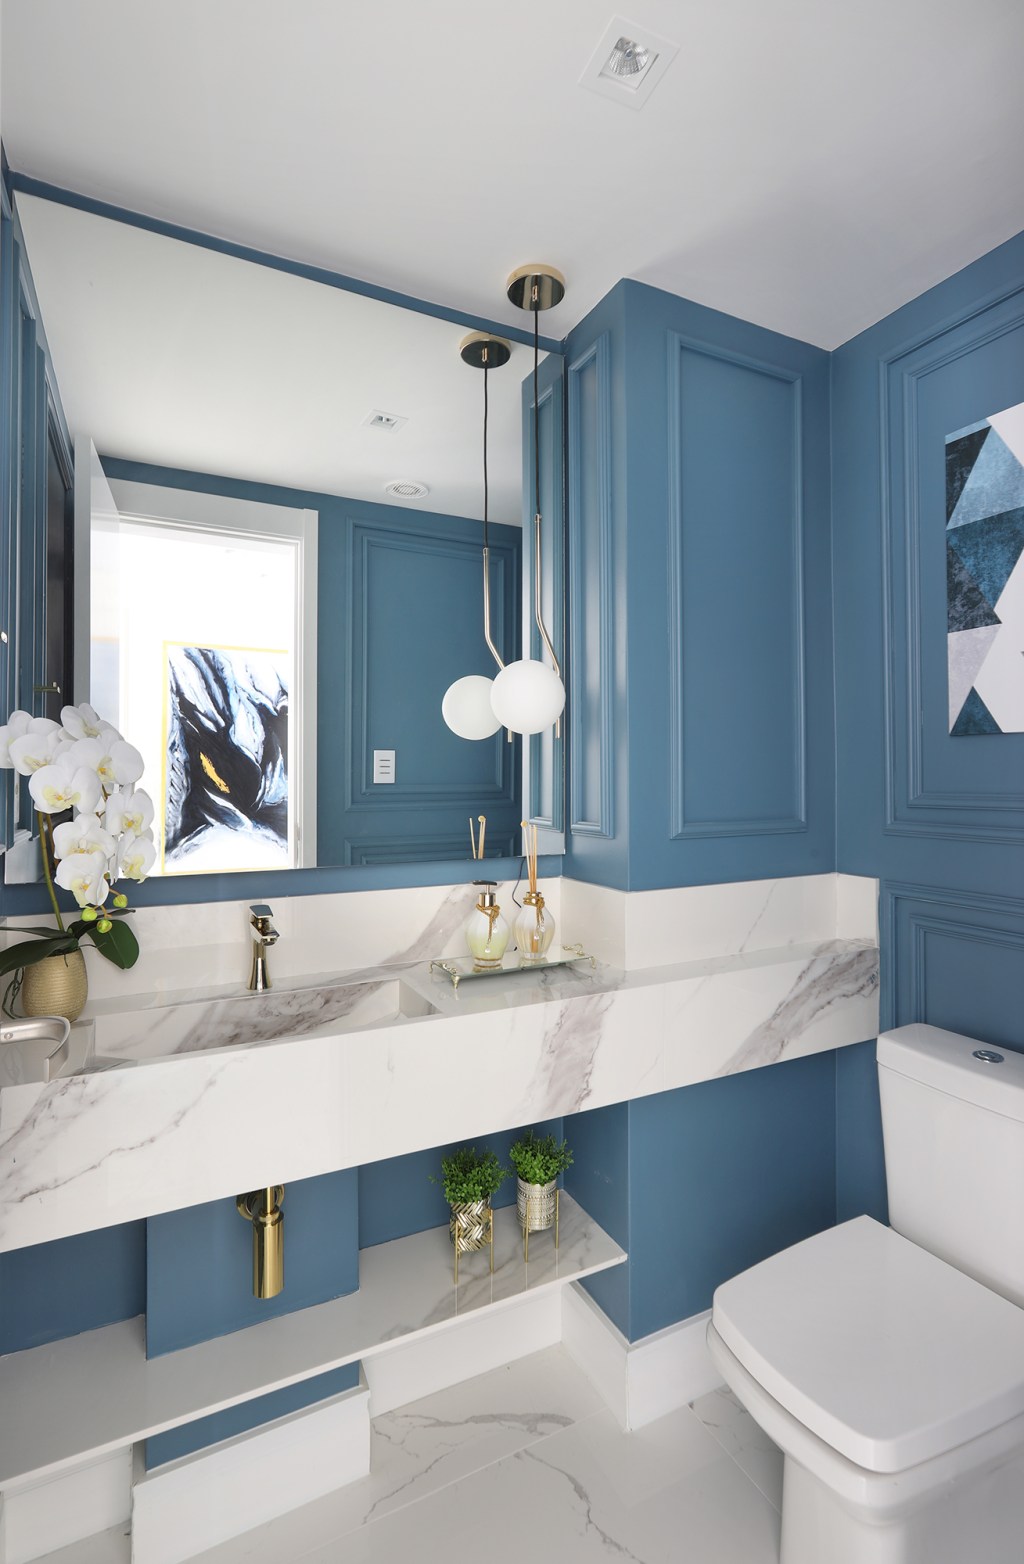 Gabriela Mendes apartamento clássico decoração lavabo azul petroleo moldura espelho